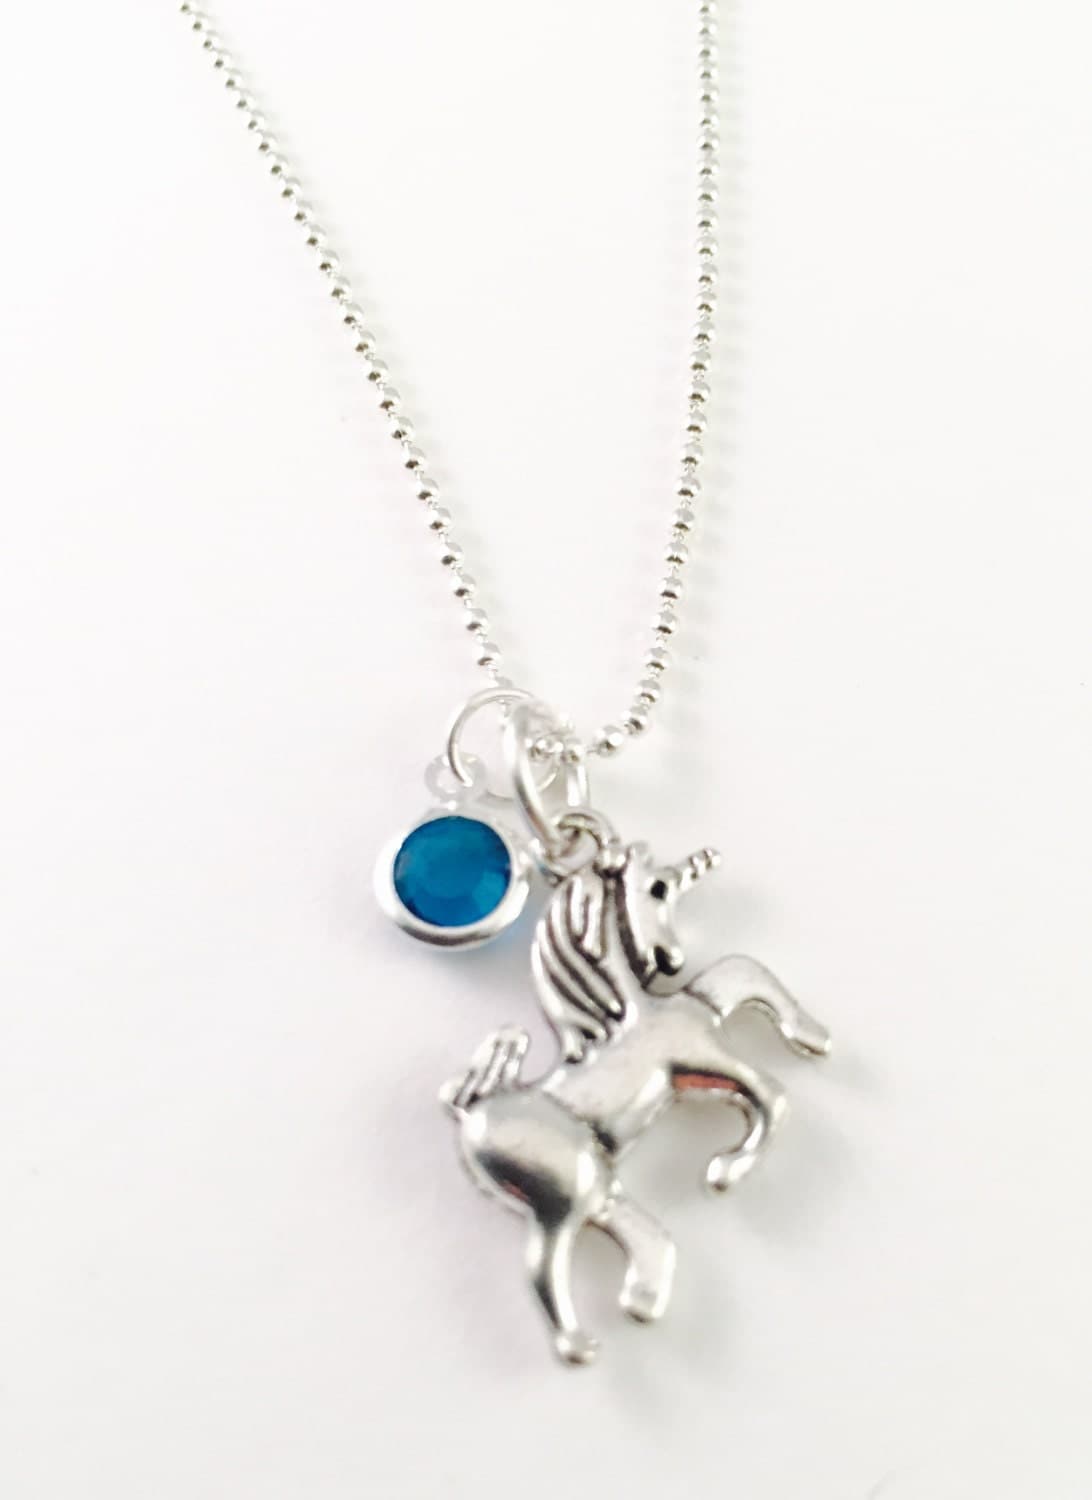 Personalized Unicorn Necklace Necklace Charm by AlwaysBeYouJewelry